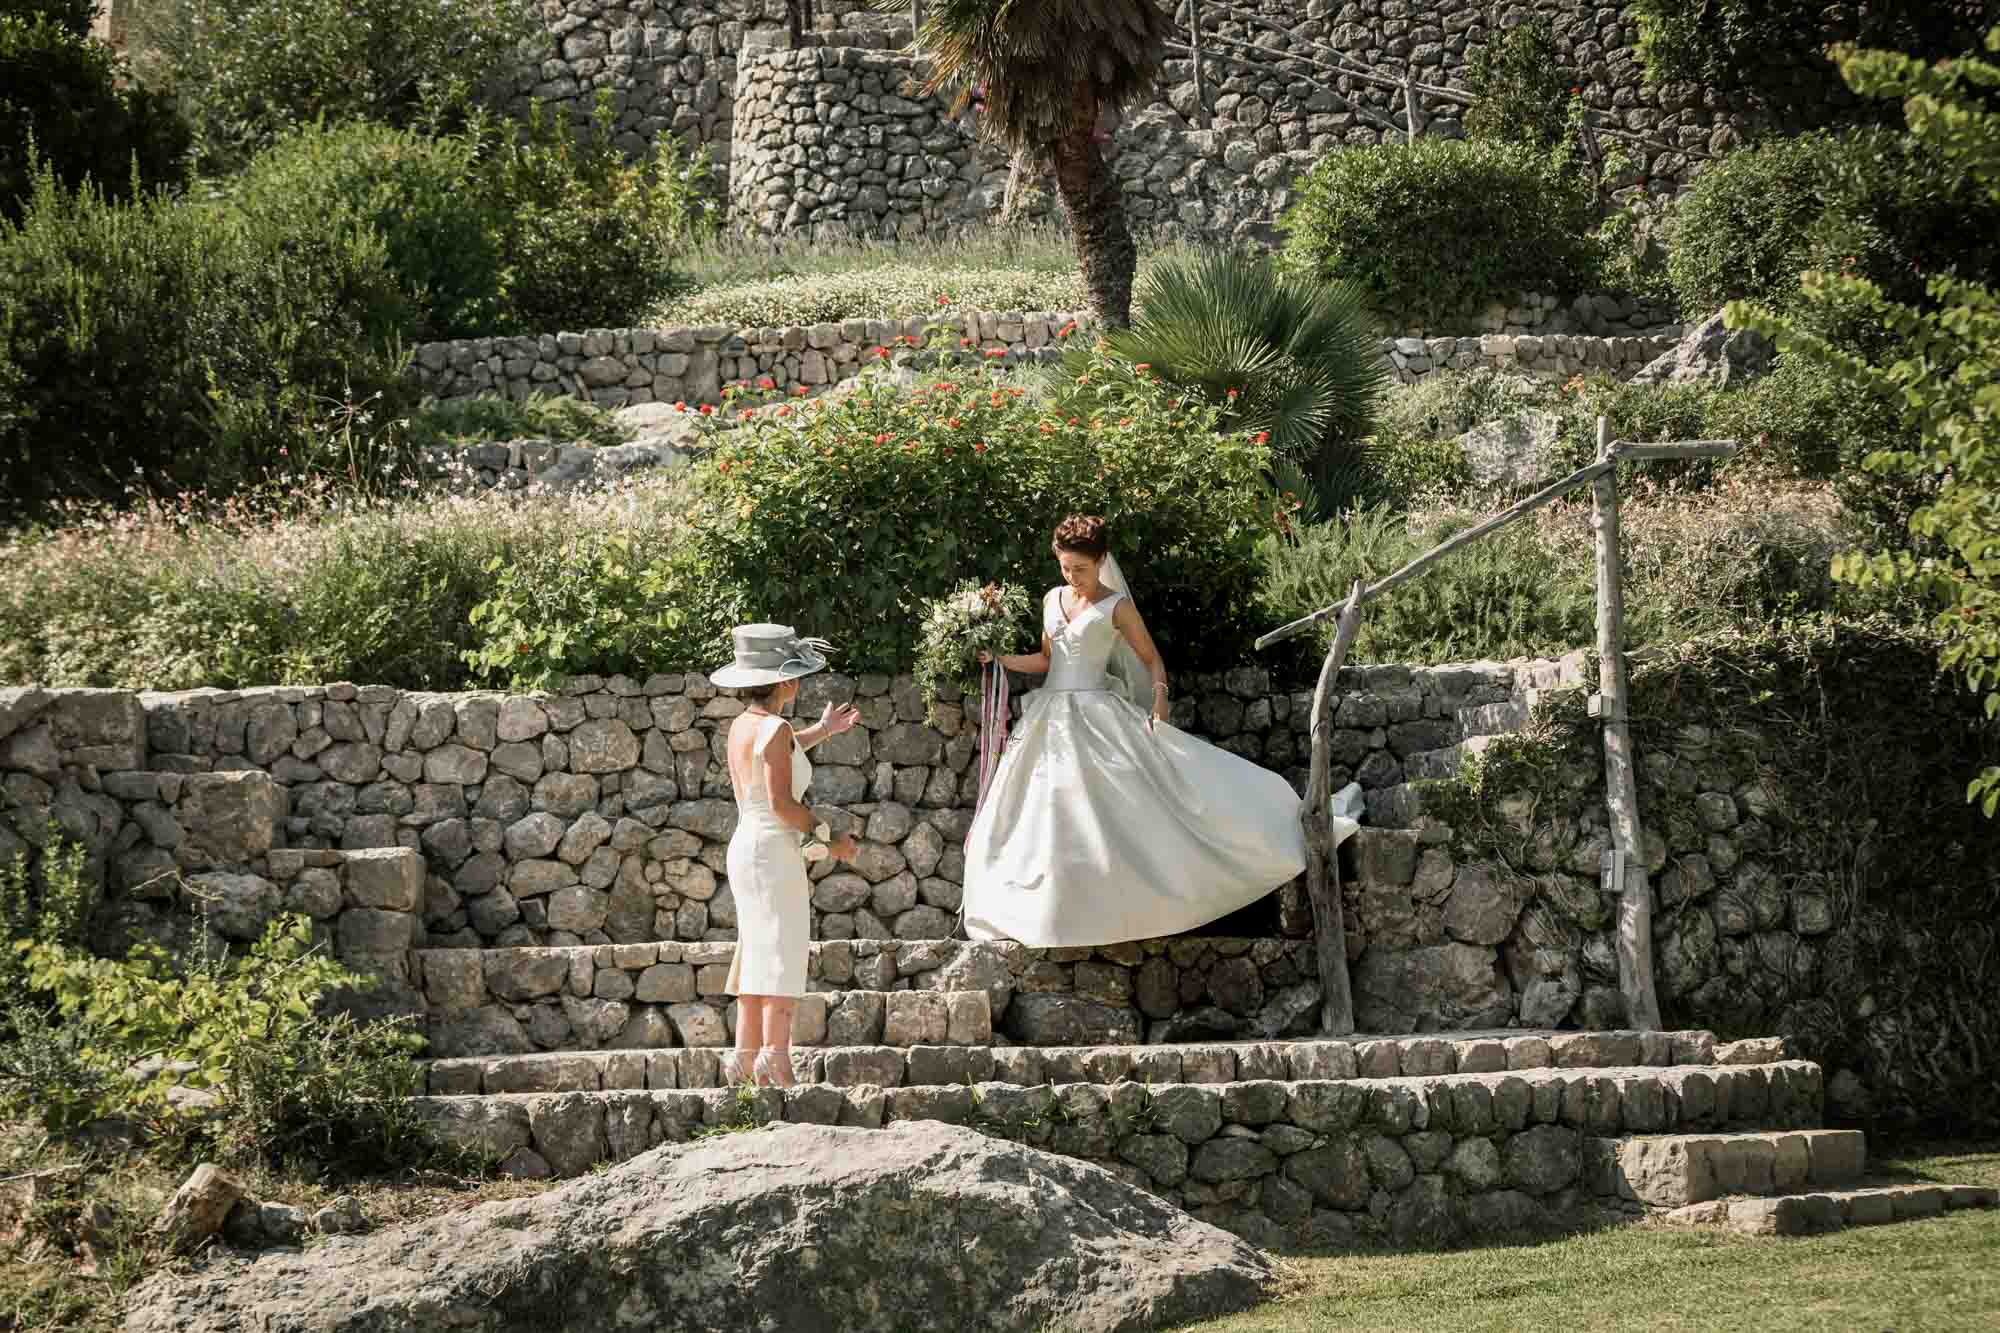 A beautiful bride descends the steps at Pedruxella Gran in Mallorca